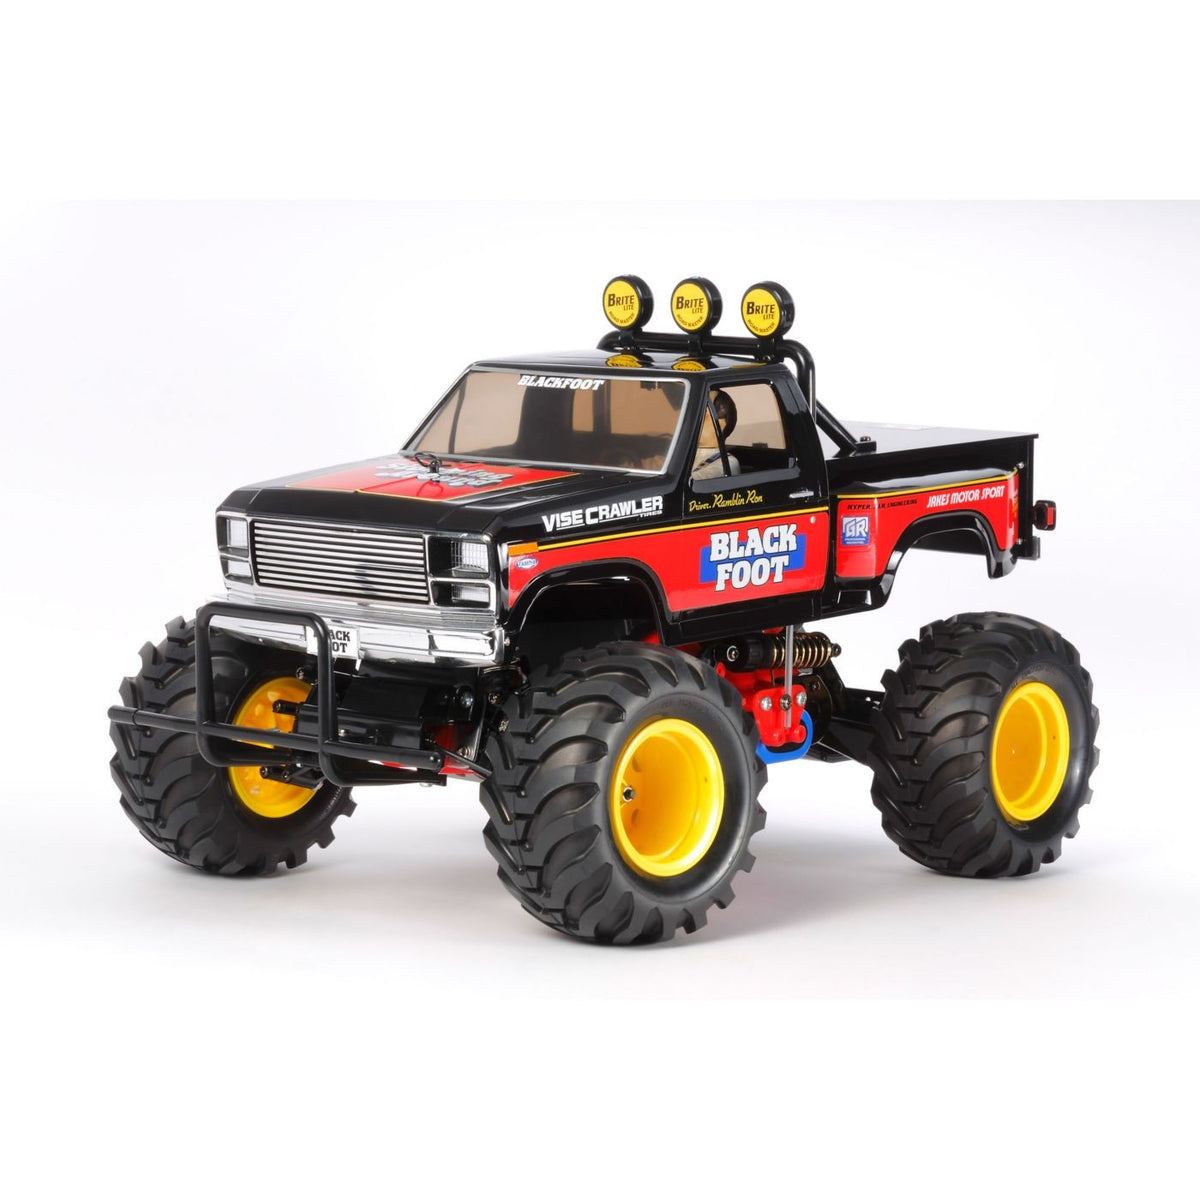 Tamiya 1/10 Blackfoot Monster Truck 2016 2WD Kit (TAM58633)